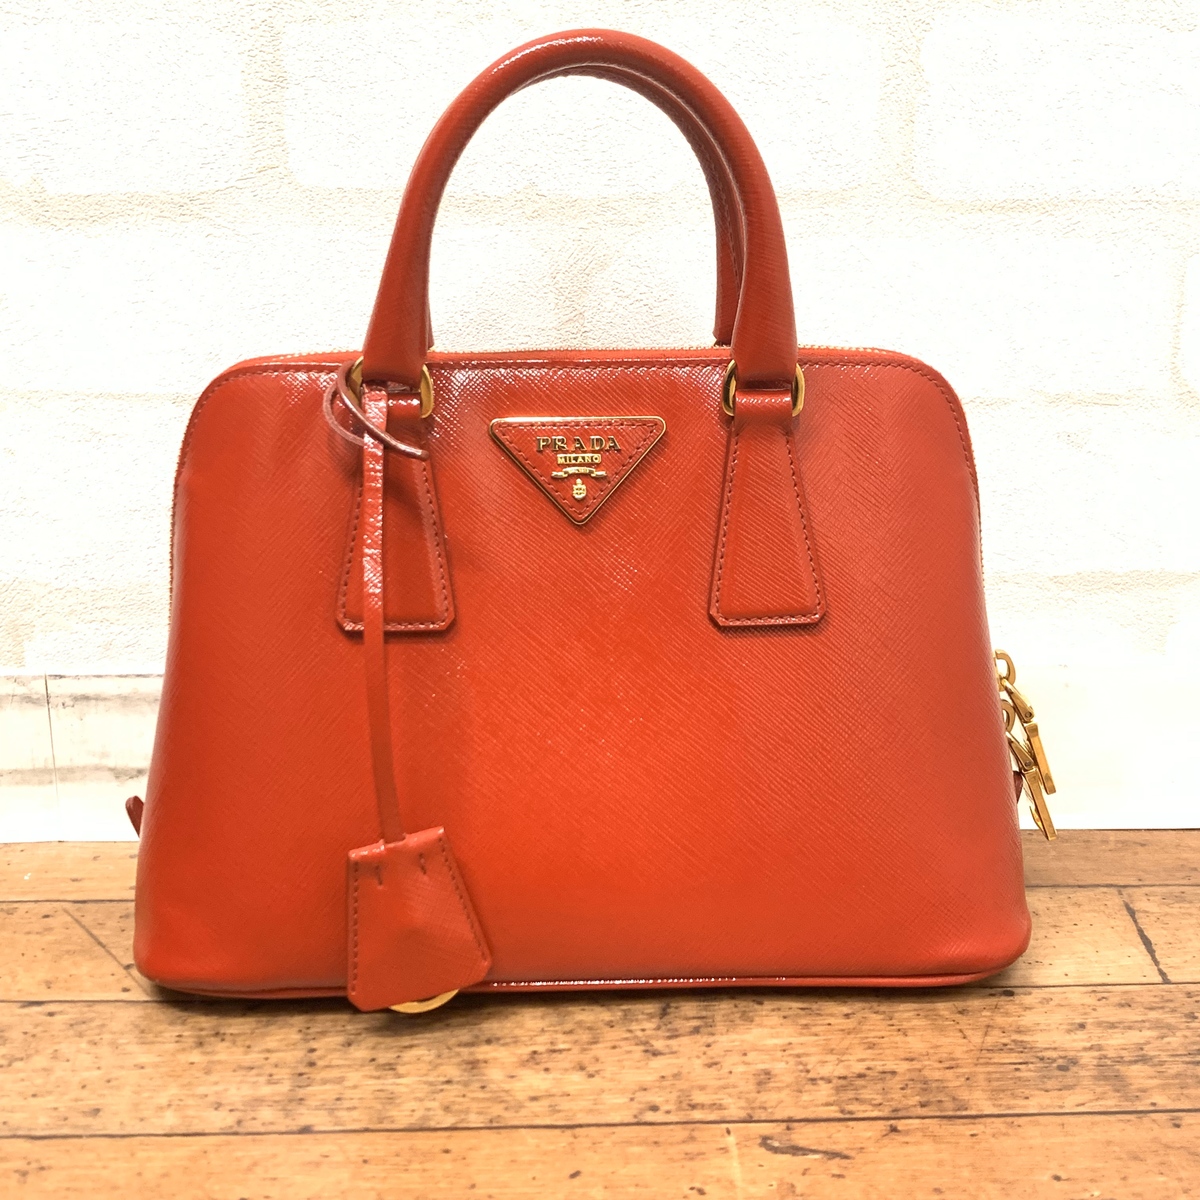 エコスタイル銀座本店で、プラダの赤のBL0838のサフィアーノの2WAYのバッグを買取ました。 買取価格・実績 2019年9月27日公開情報